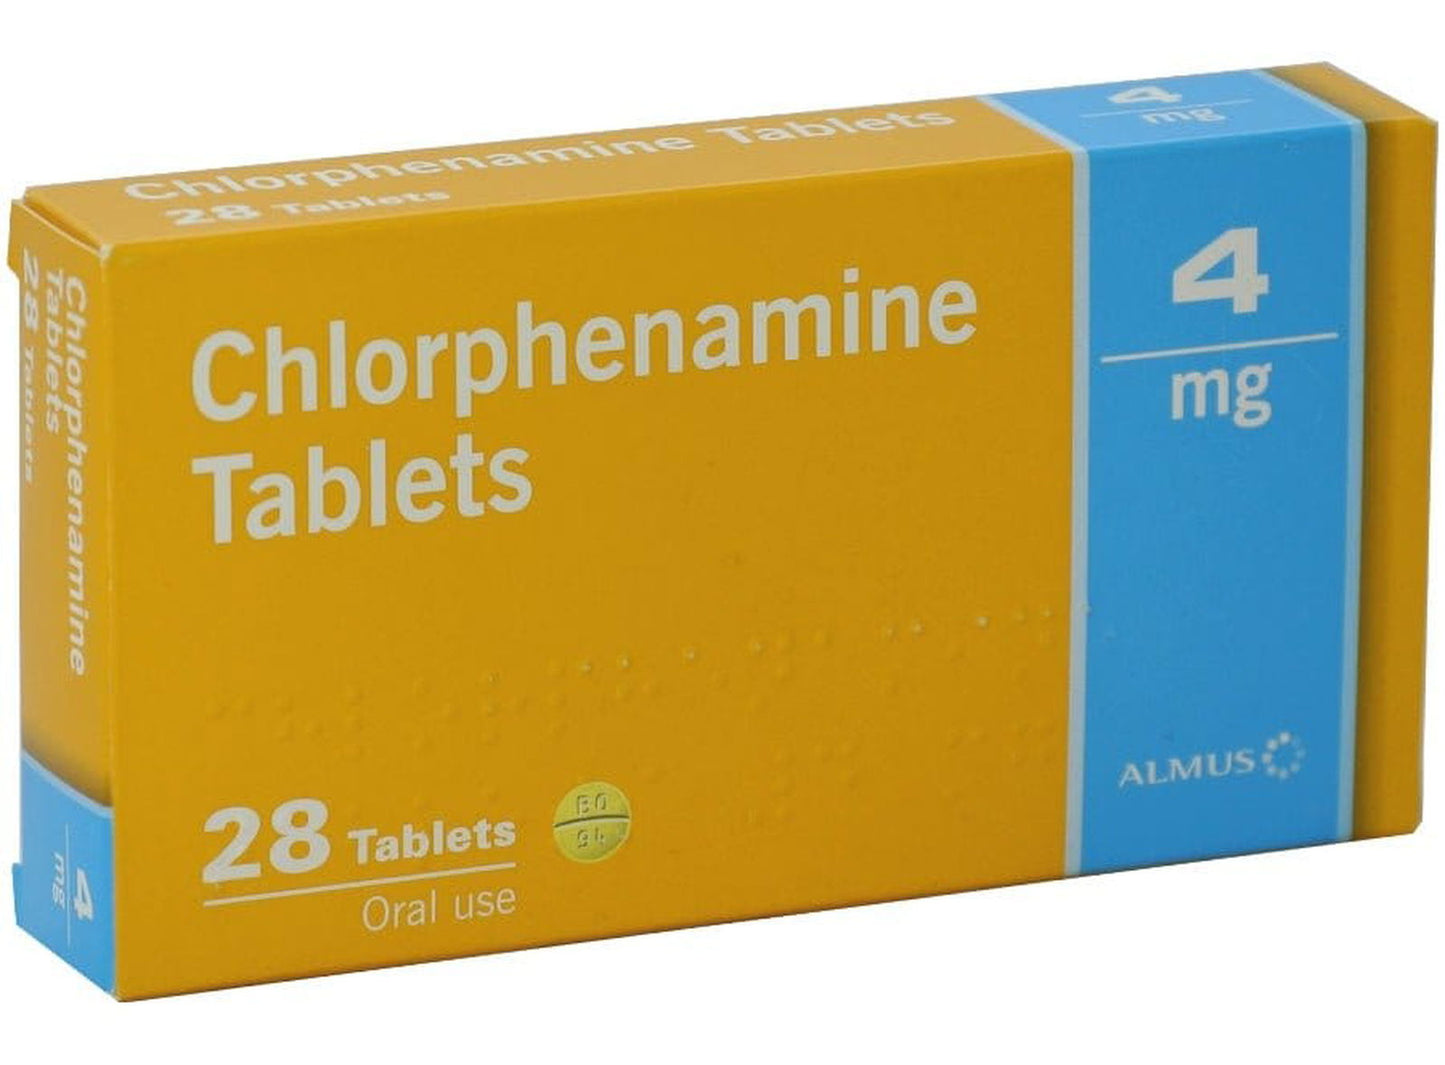 Chlorphenamine 4mg Allergy & Hayfever Relief Tablets - Pack of 28 - EasyMeds Pharmacy